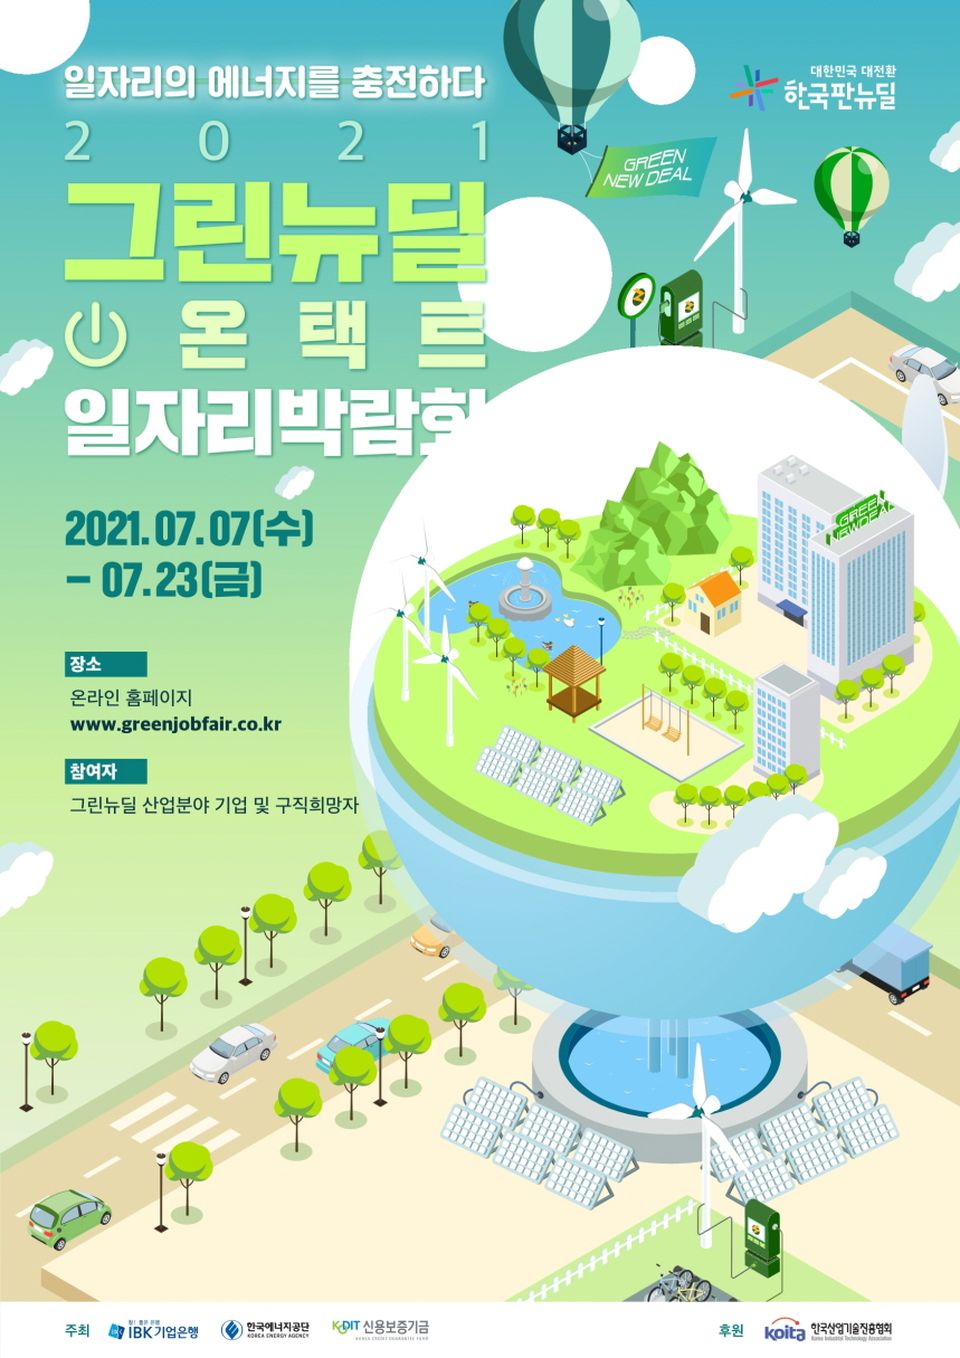 한국에너지공단은 7월 7일~23일까지 IBK기업은행, 신용보증기금과 함께 채용 전 과정을 원스톱으로 지원하는 ‘2021 그린뉴딜 온택트 일자리 박람회’를 개최한다.